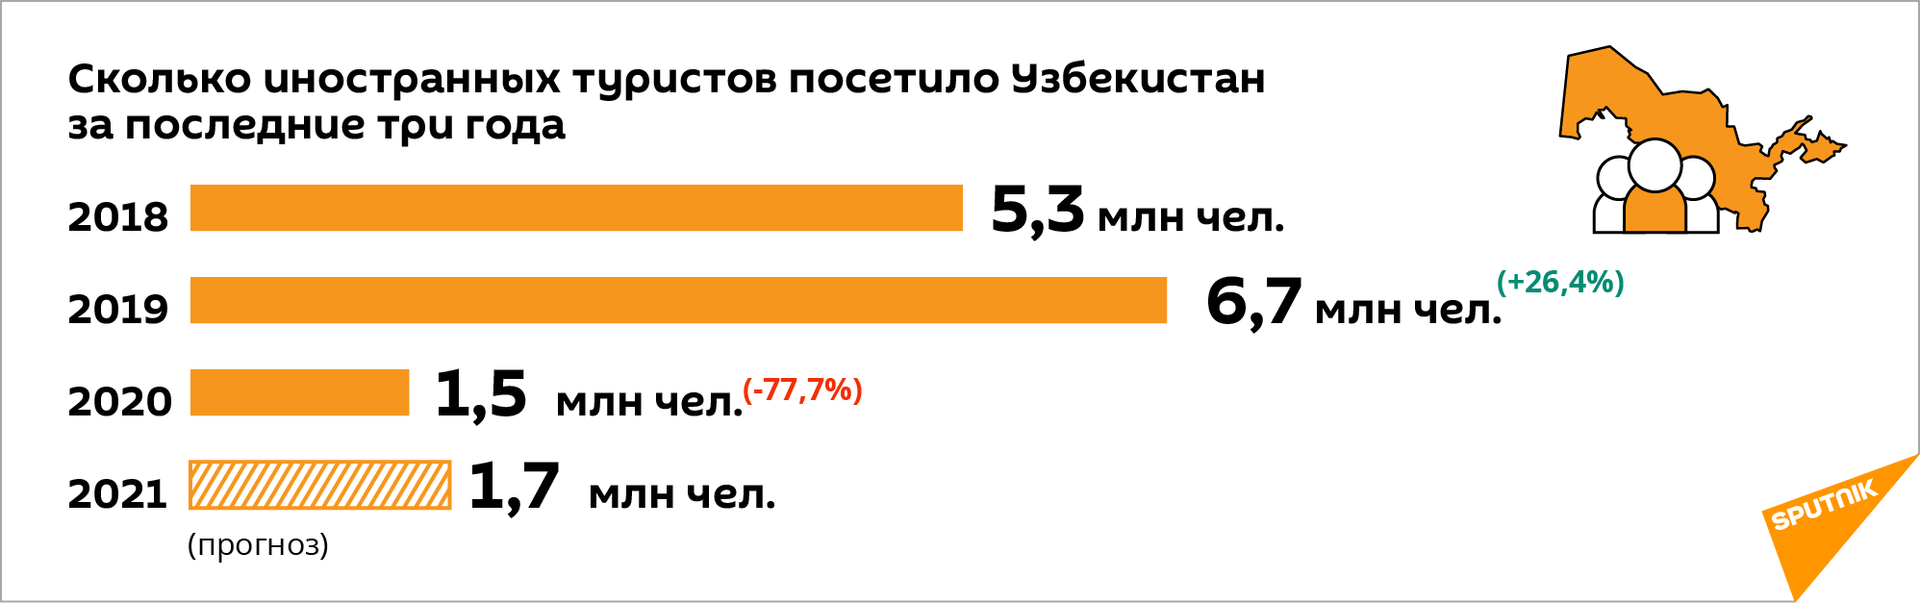 Статистика турпотока - Sputnik Узбекистан, 1920, 09.03.2021